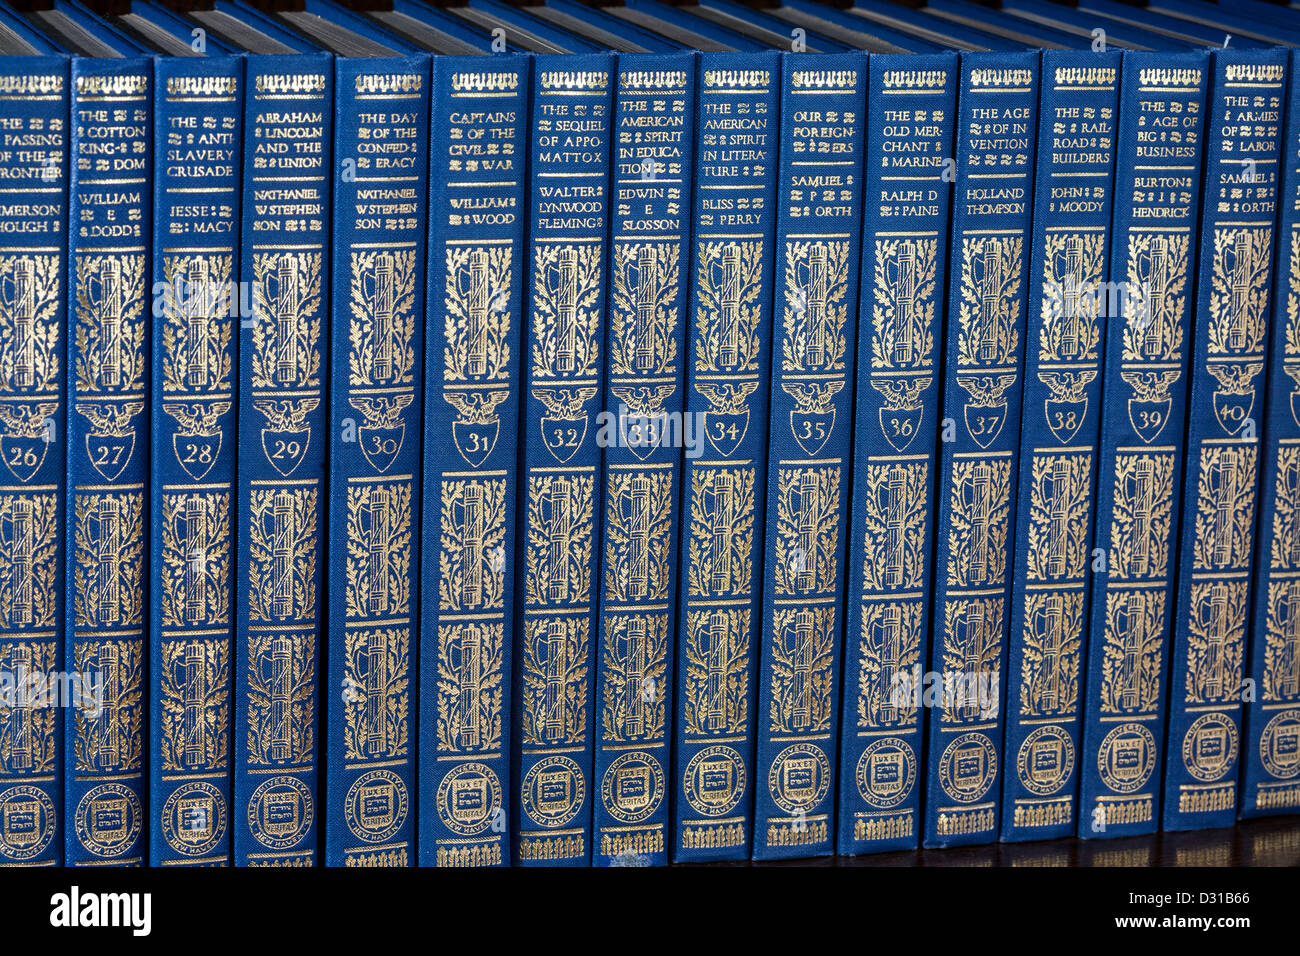 Colección de libros antiguos: Las Crónicas de América - Edición de Roosevelt, EE.UU. Foto de stock